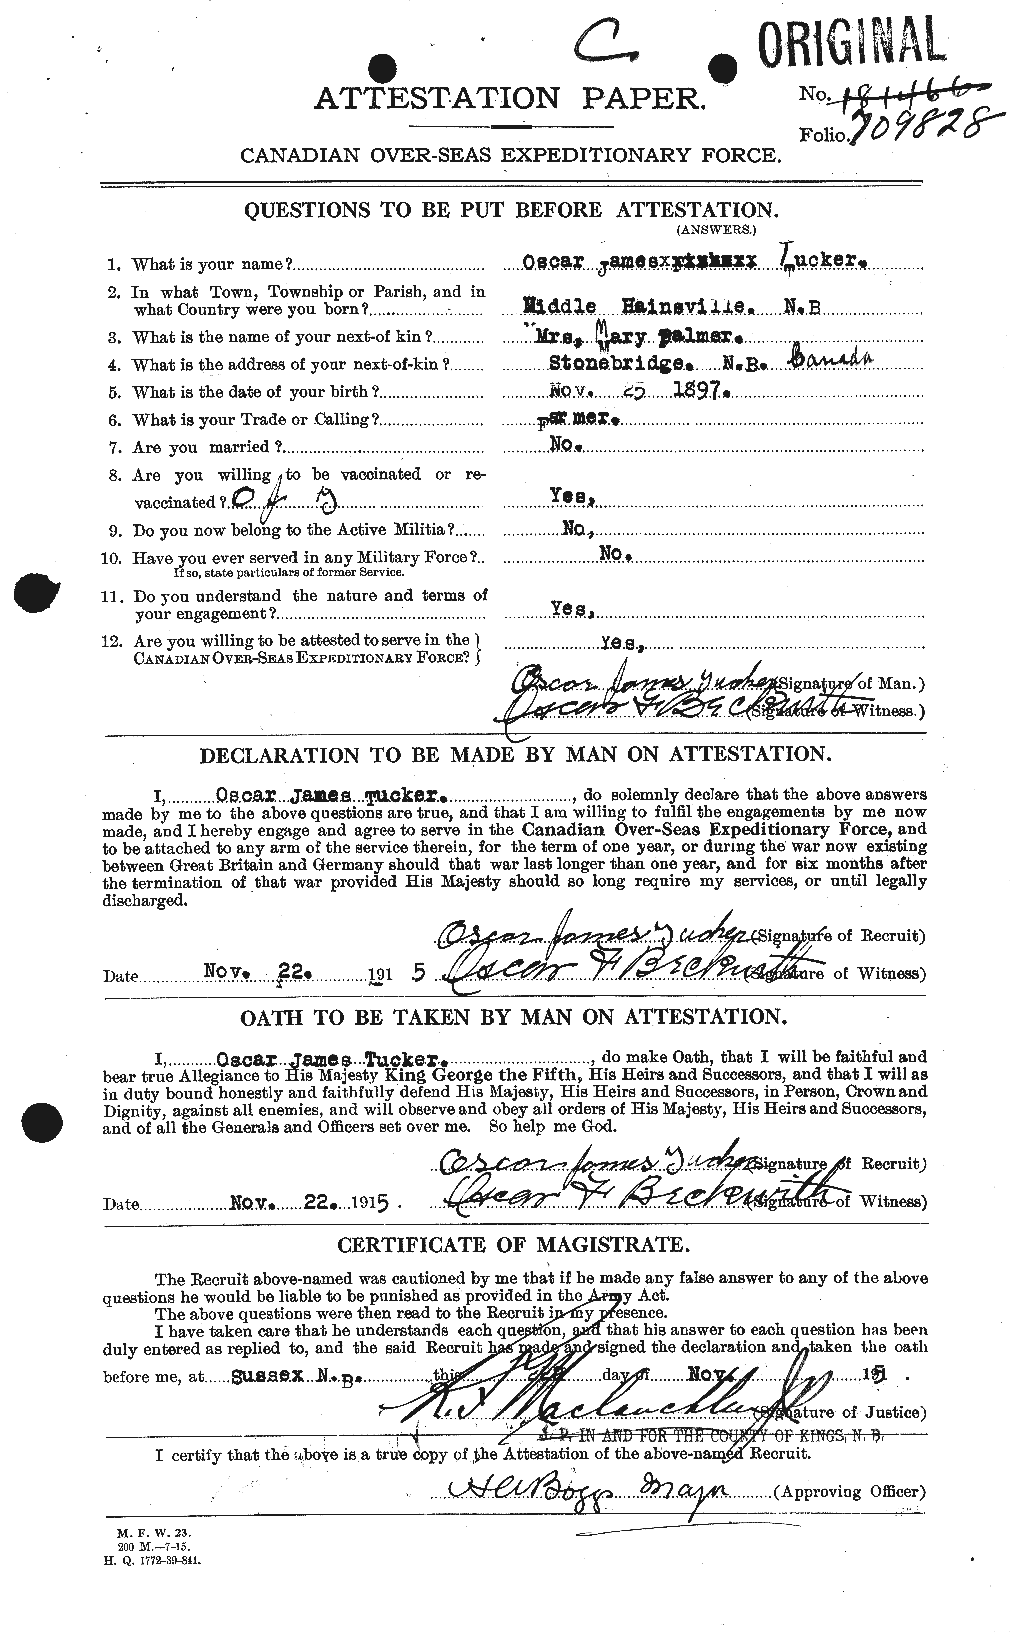 Dossiers du Personnel de la Première Guerre mondiale - CEC 642802a